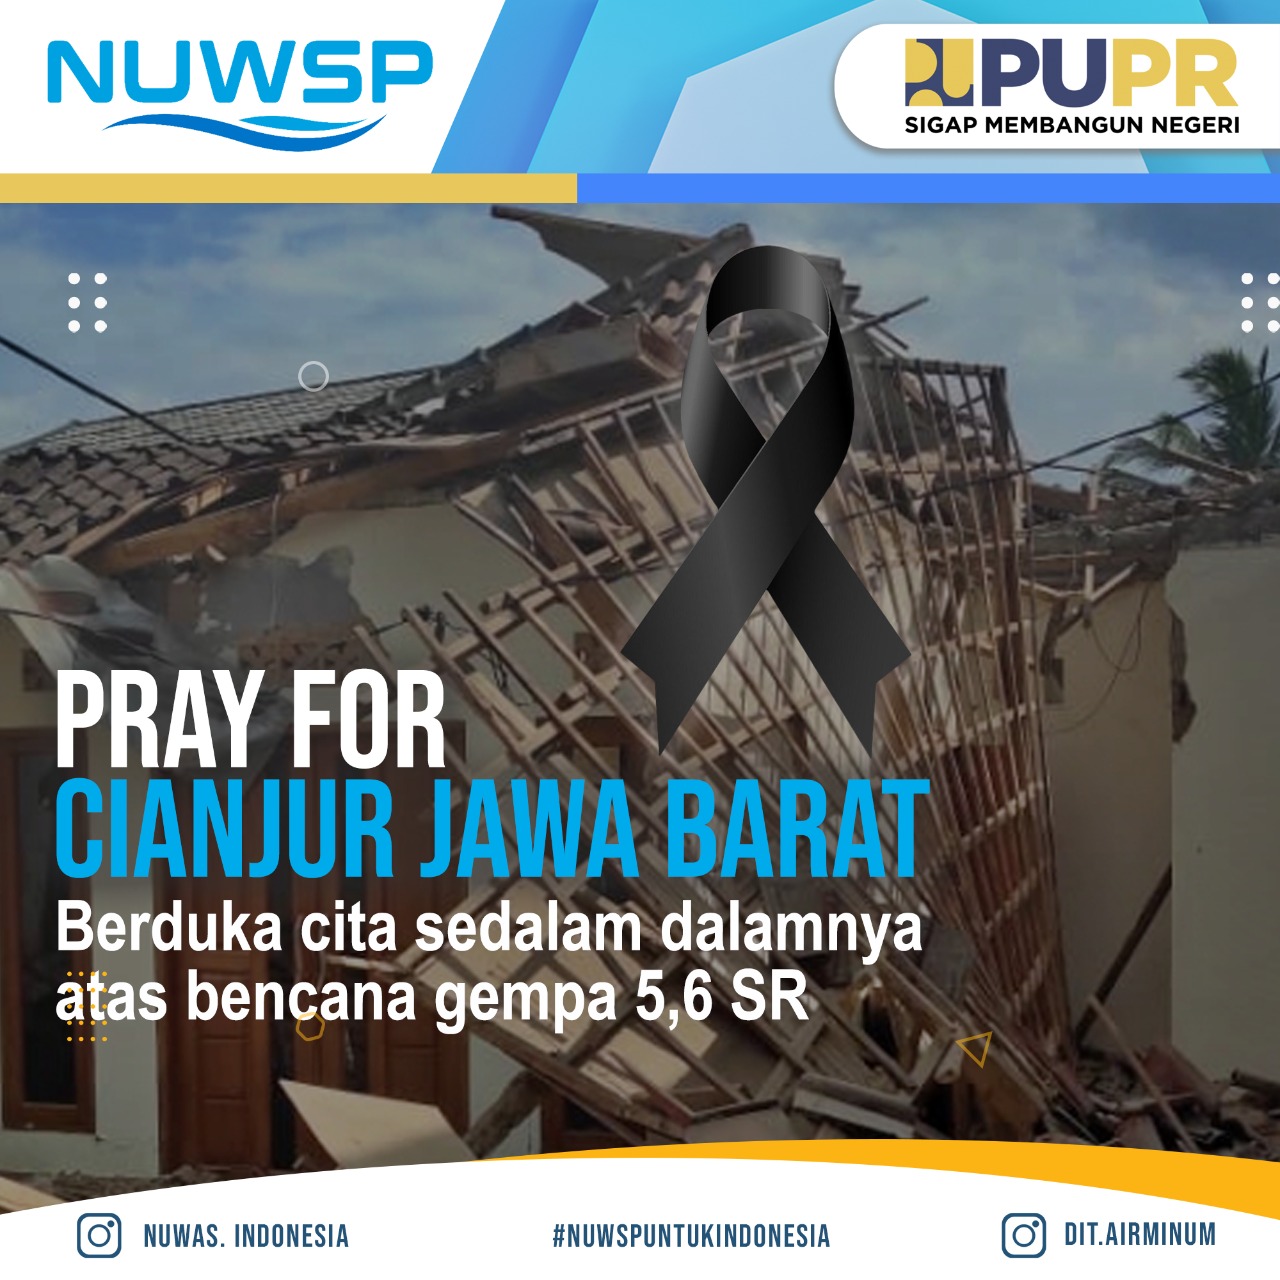 DOA UNTUK CIANJUR Turut berduka cita atas musibah gempa bumi yang menimpa Cianjur, Jawa barat sekitarny ?>